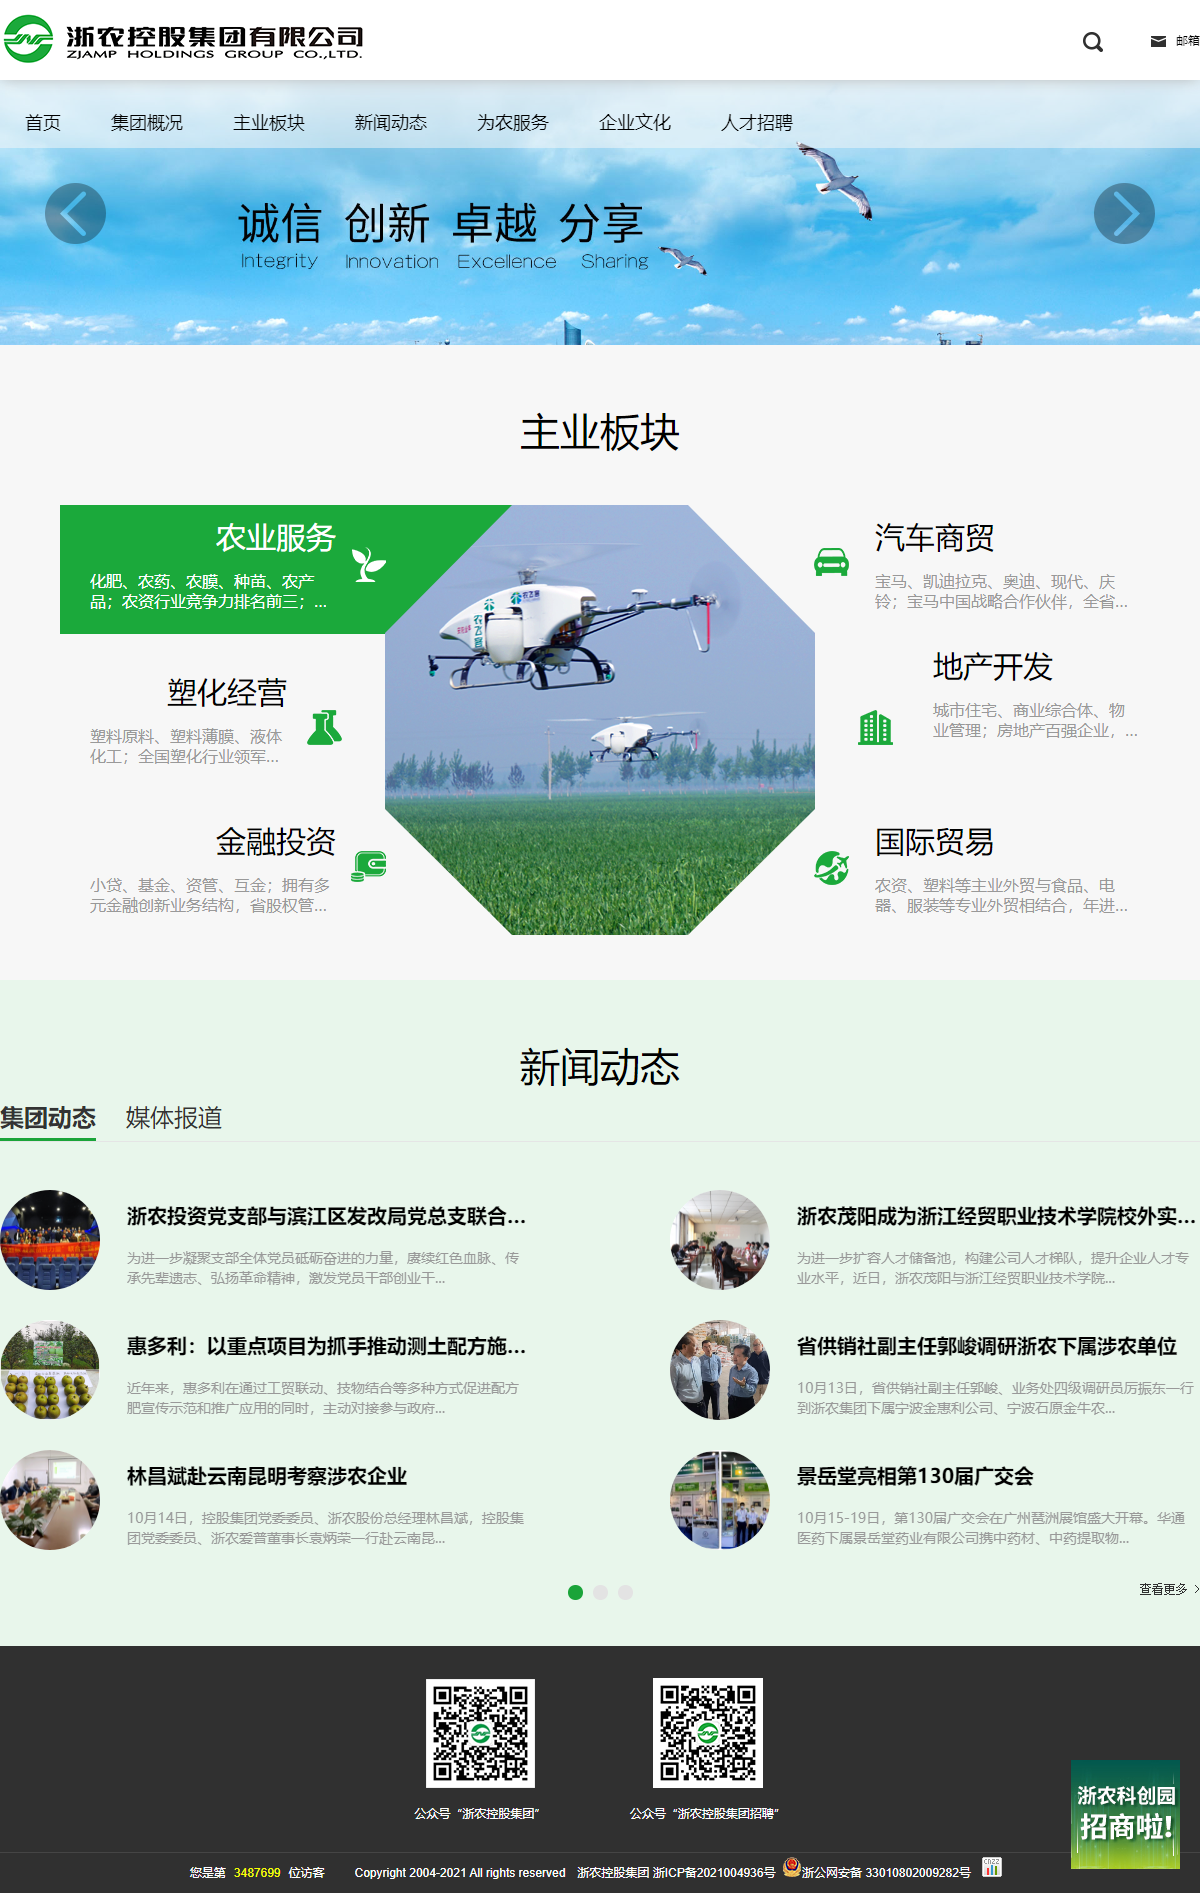 浙农控股集团有限公司网站案例